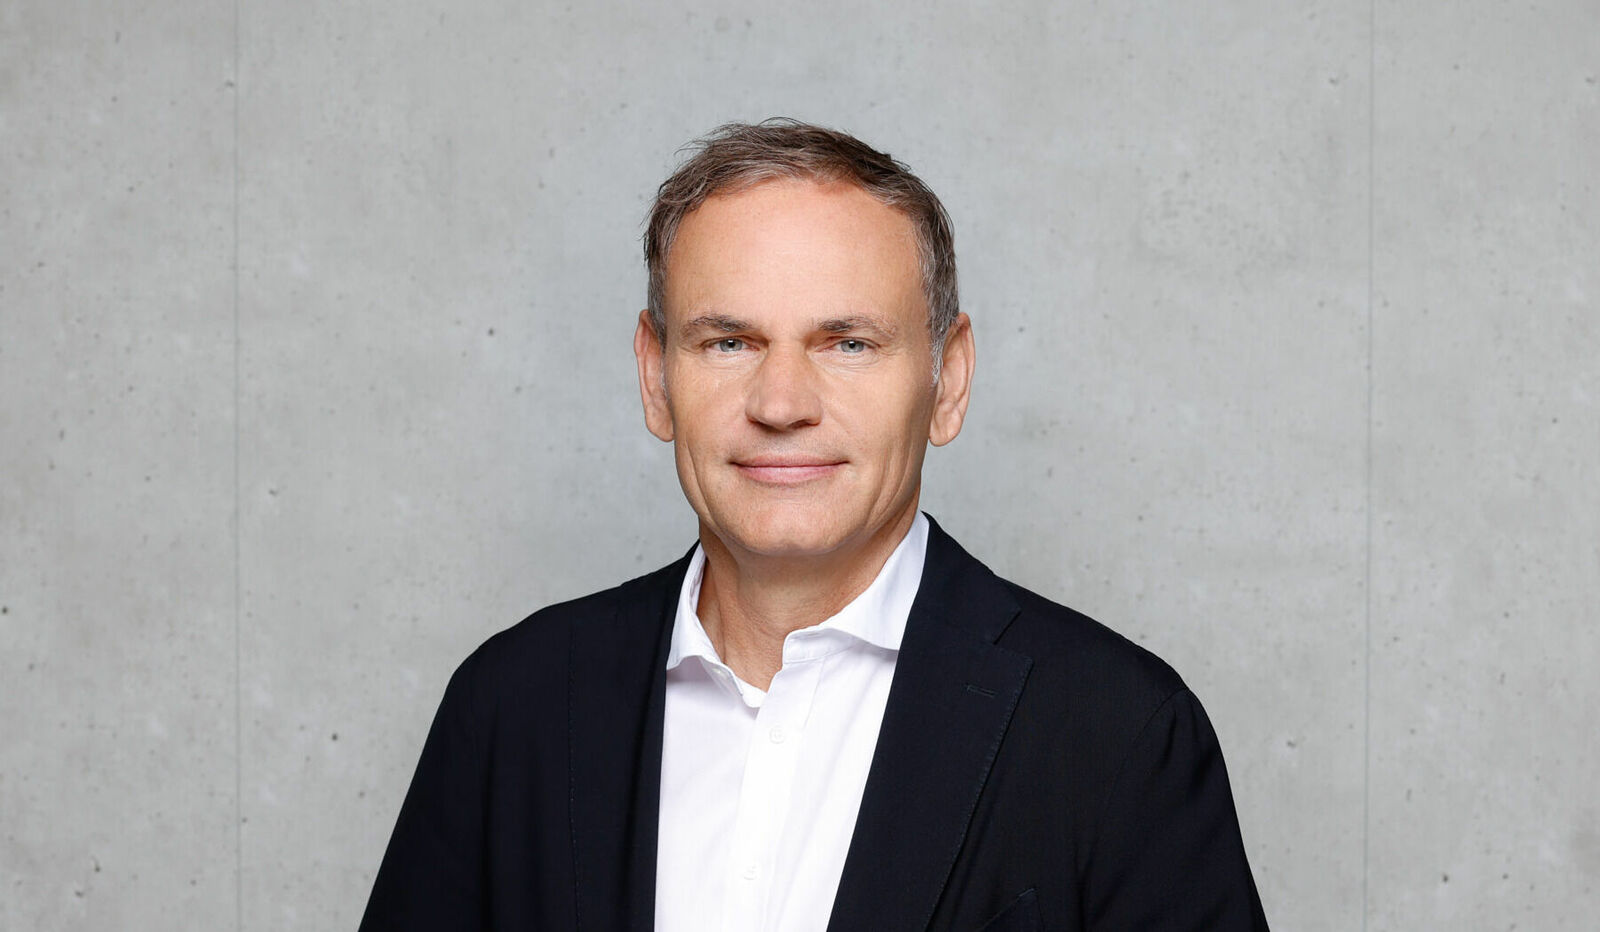 Portrait von Oliver Blume, CEO Volkswagen Group vor grauem Hintergrund